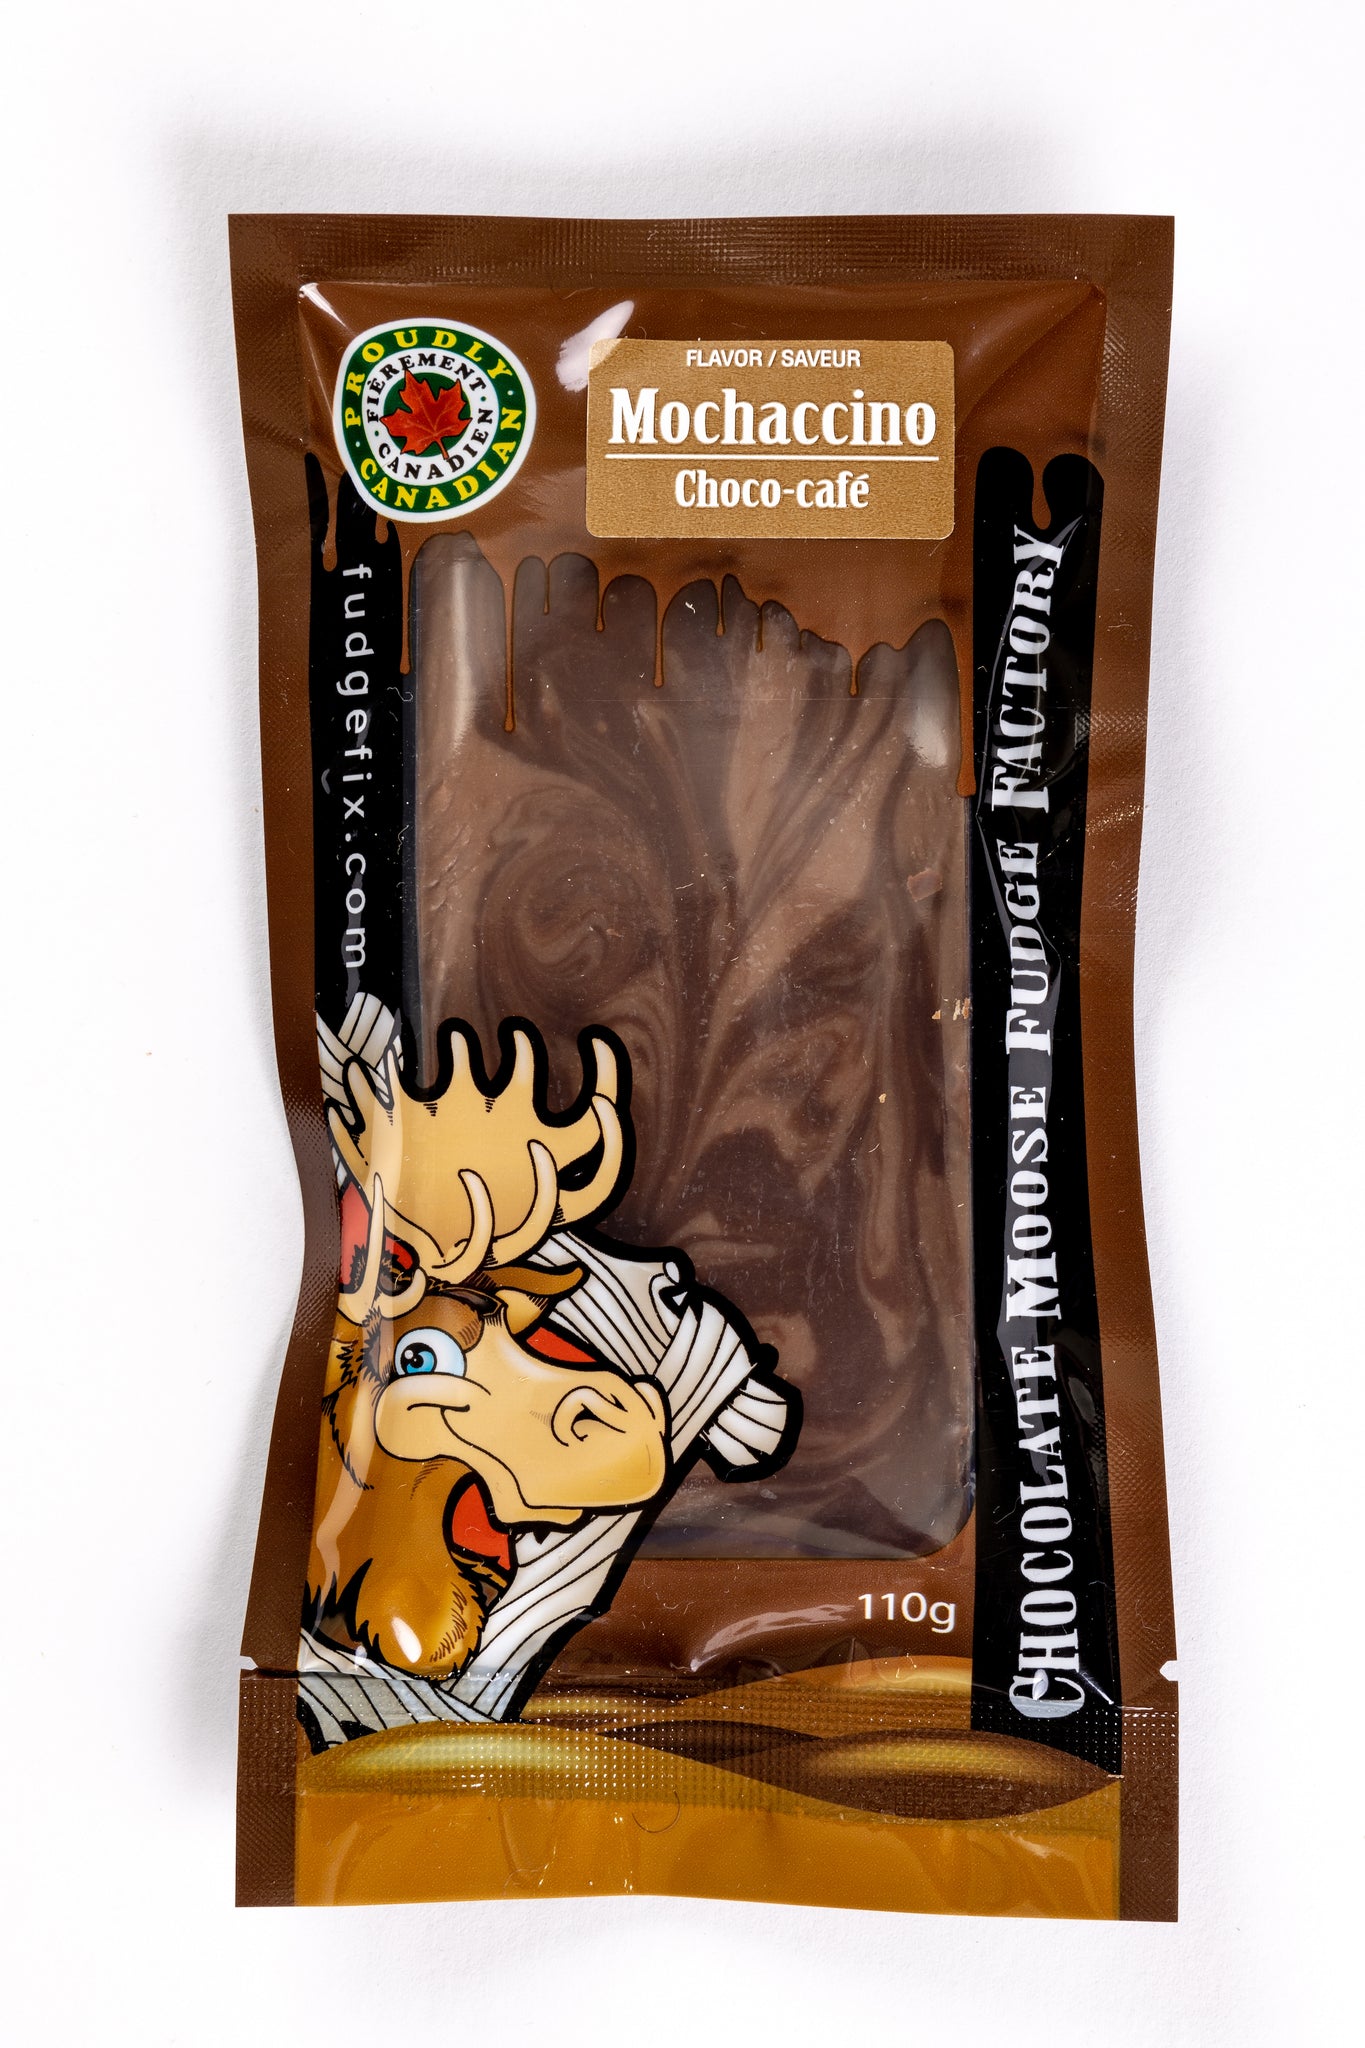 Moccachino - 110g Fudge Bars